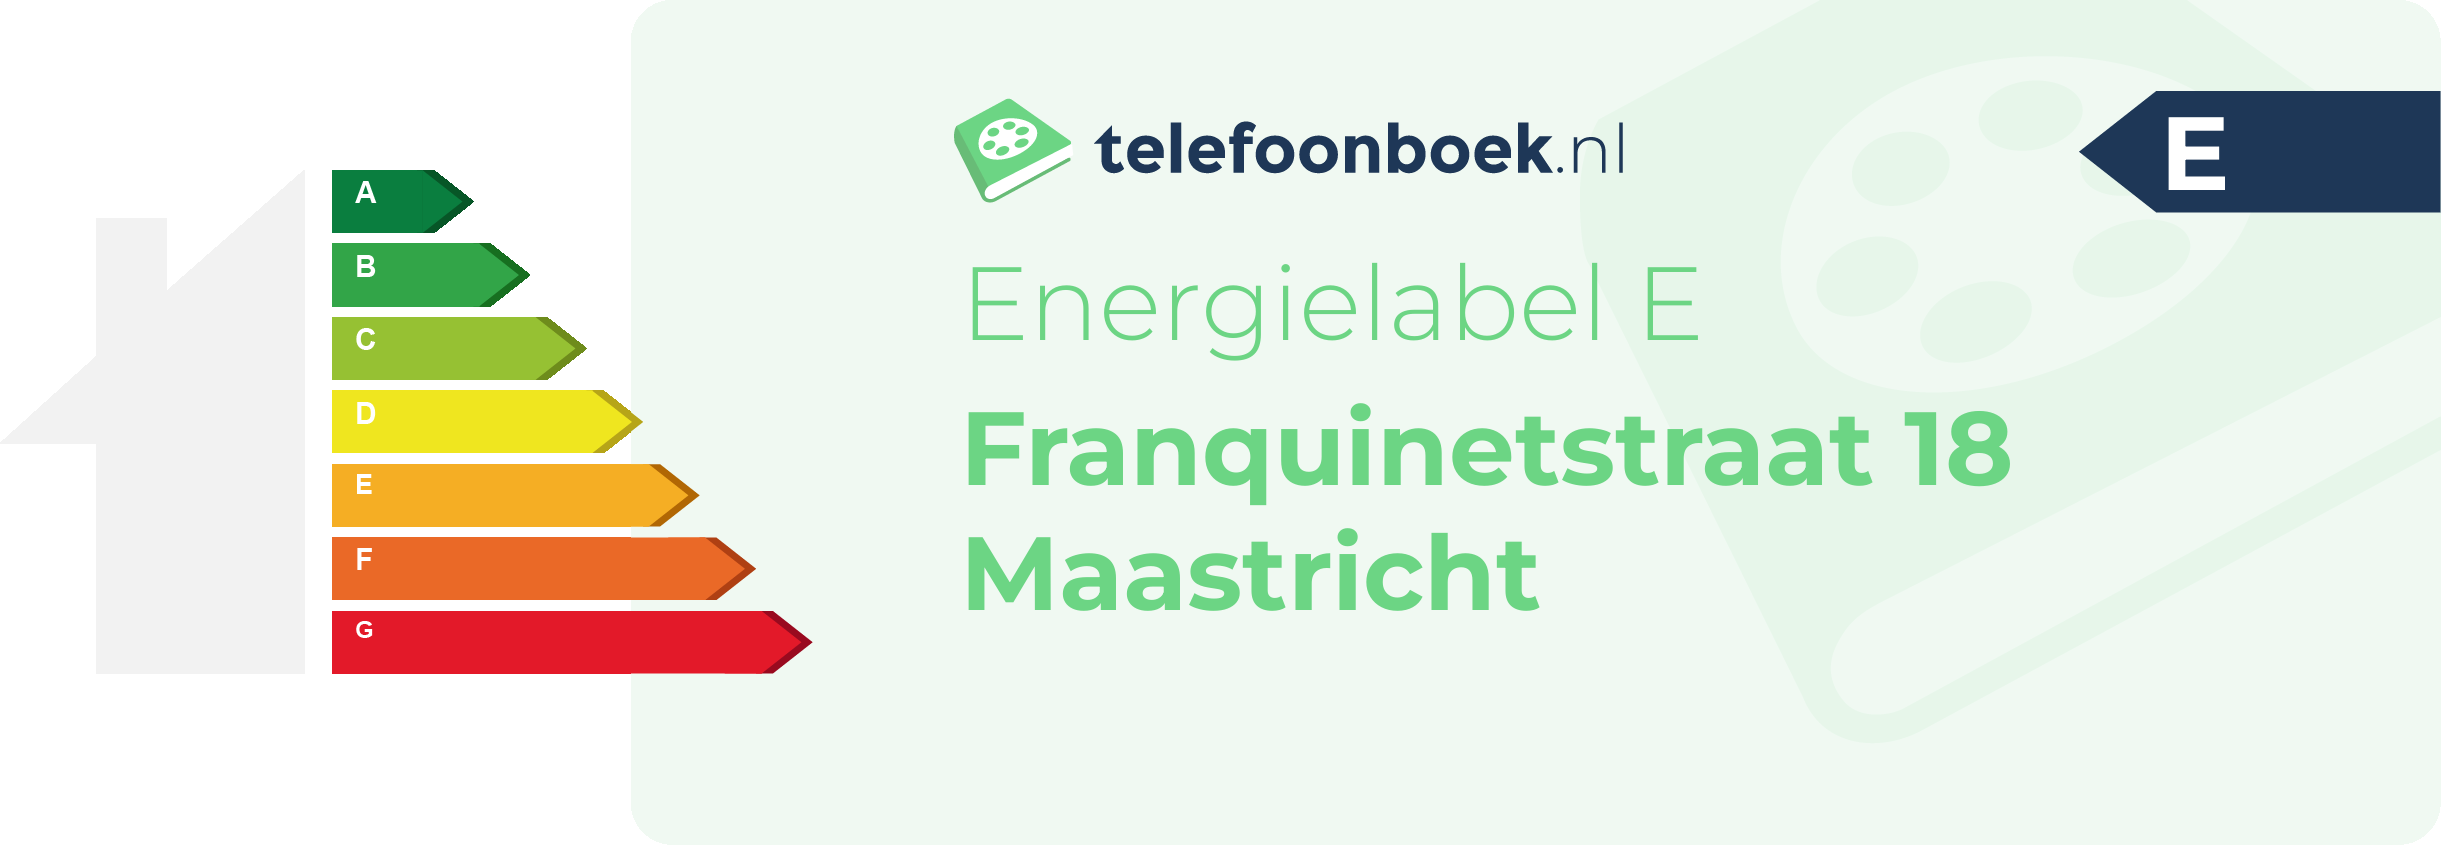 Energielabel Franquinetstraat 18 Maastricht